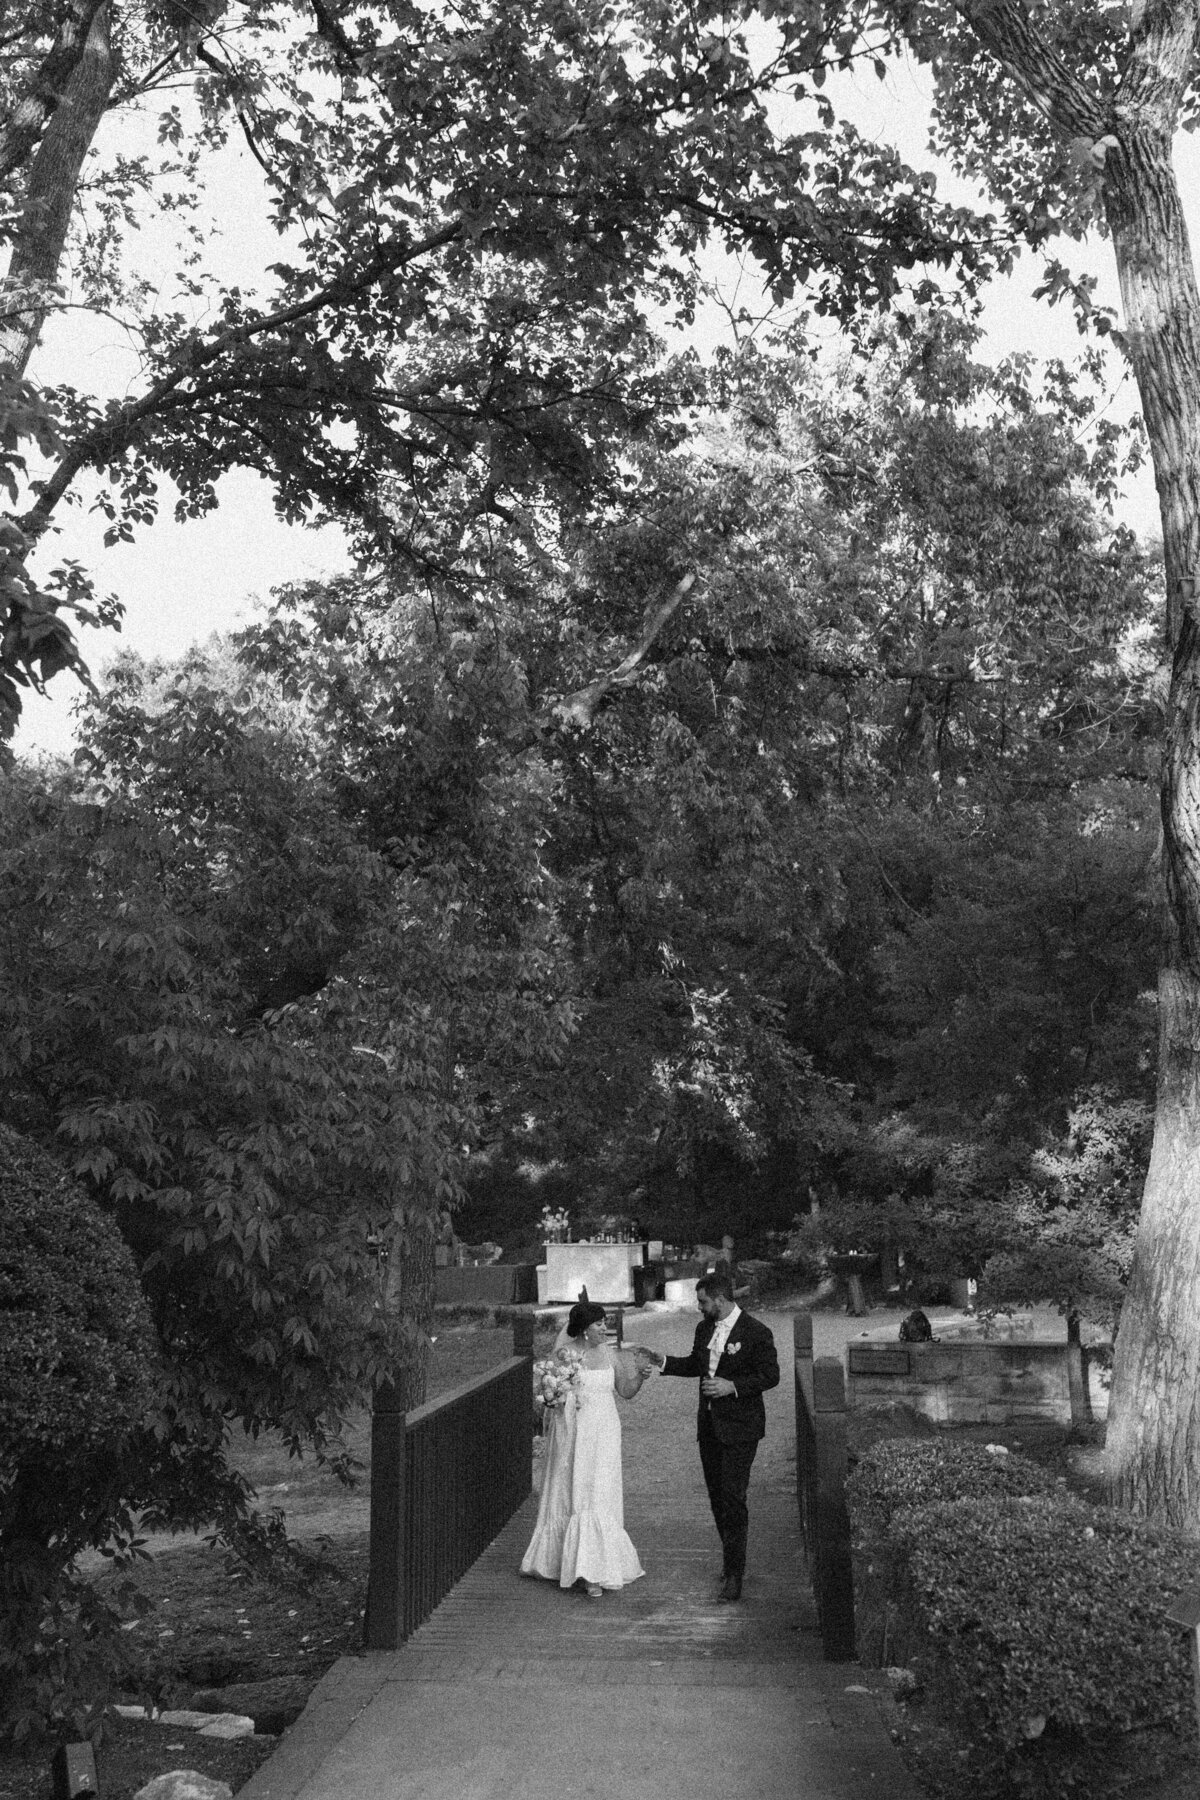 Bride and groom walking through the gardens at Umlauf Sculpture Garden, Austin